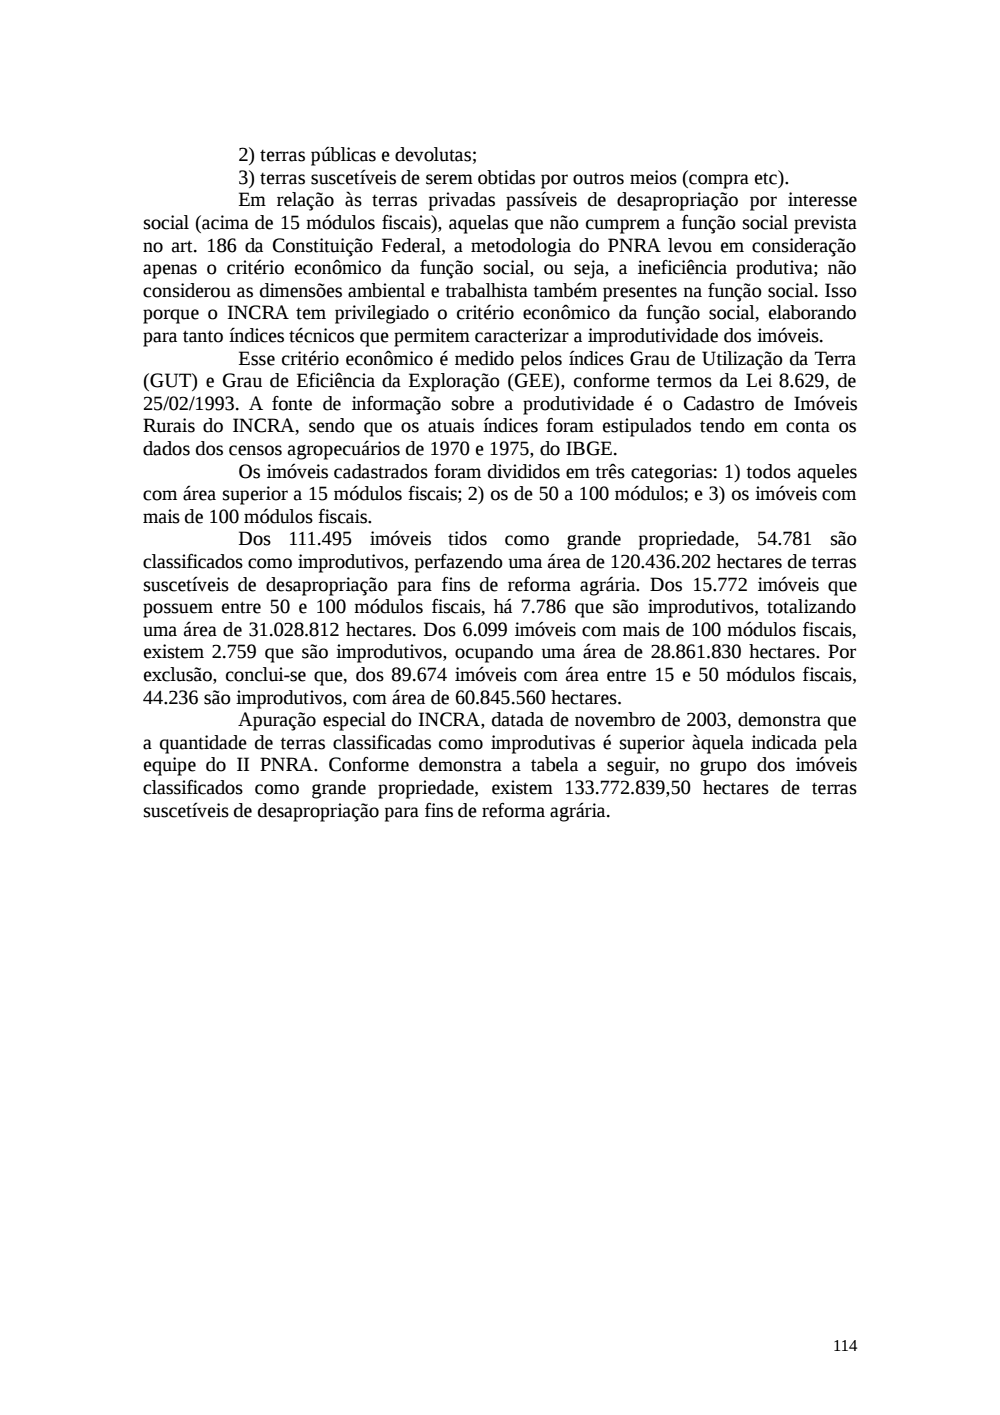 Page 114 from Relatório final da comissão